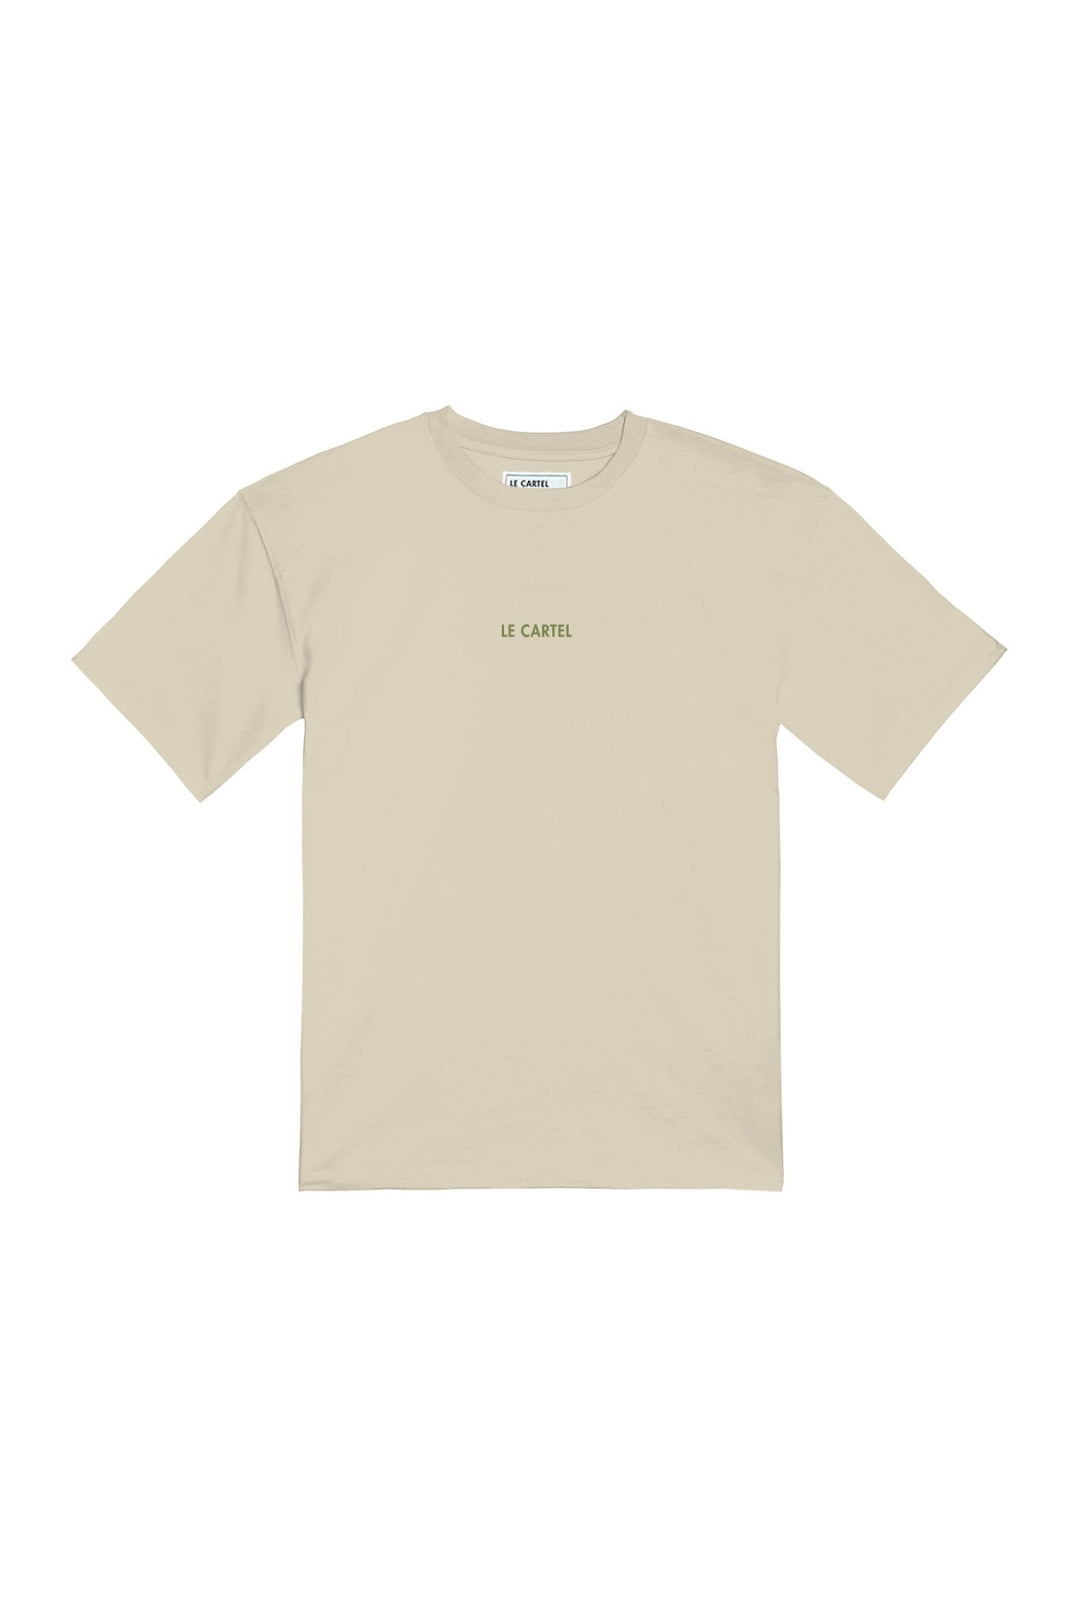 COLLÉ - SERRÉ・T - shirt unisexe・Sable - Le Cartel